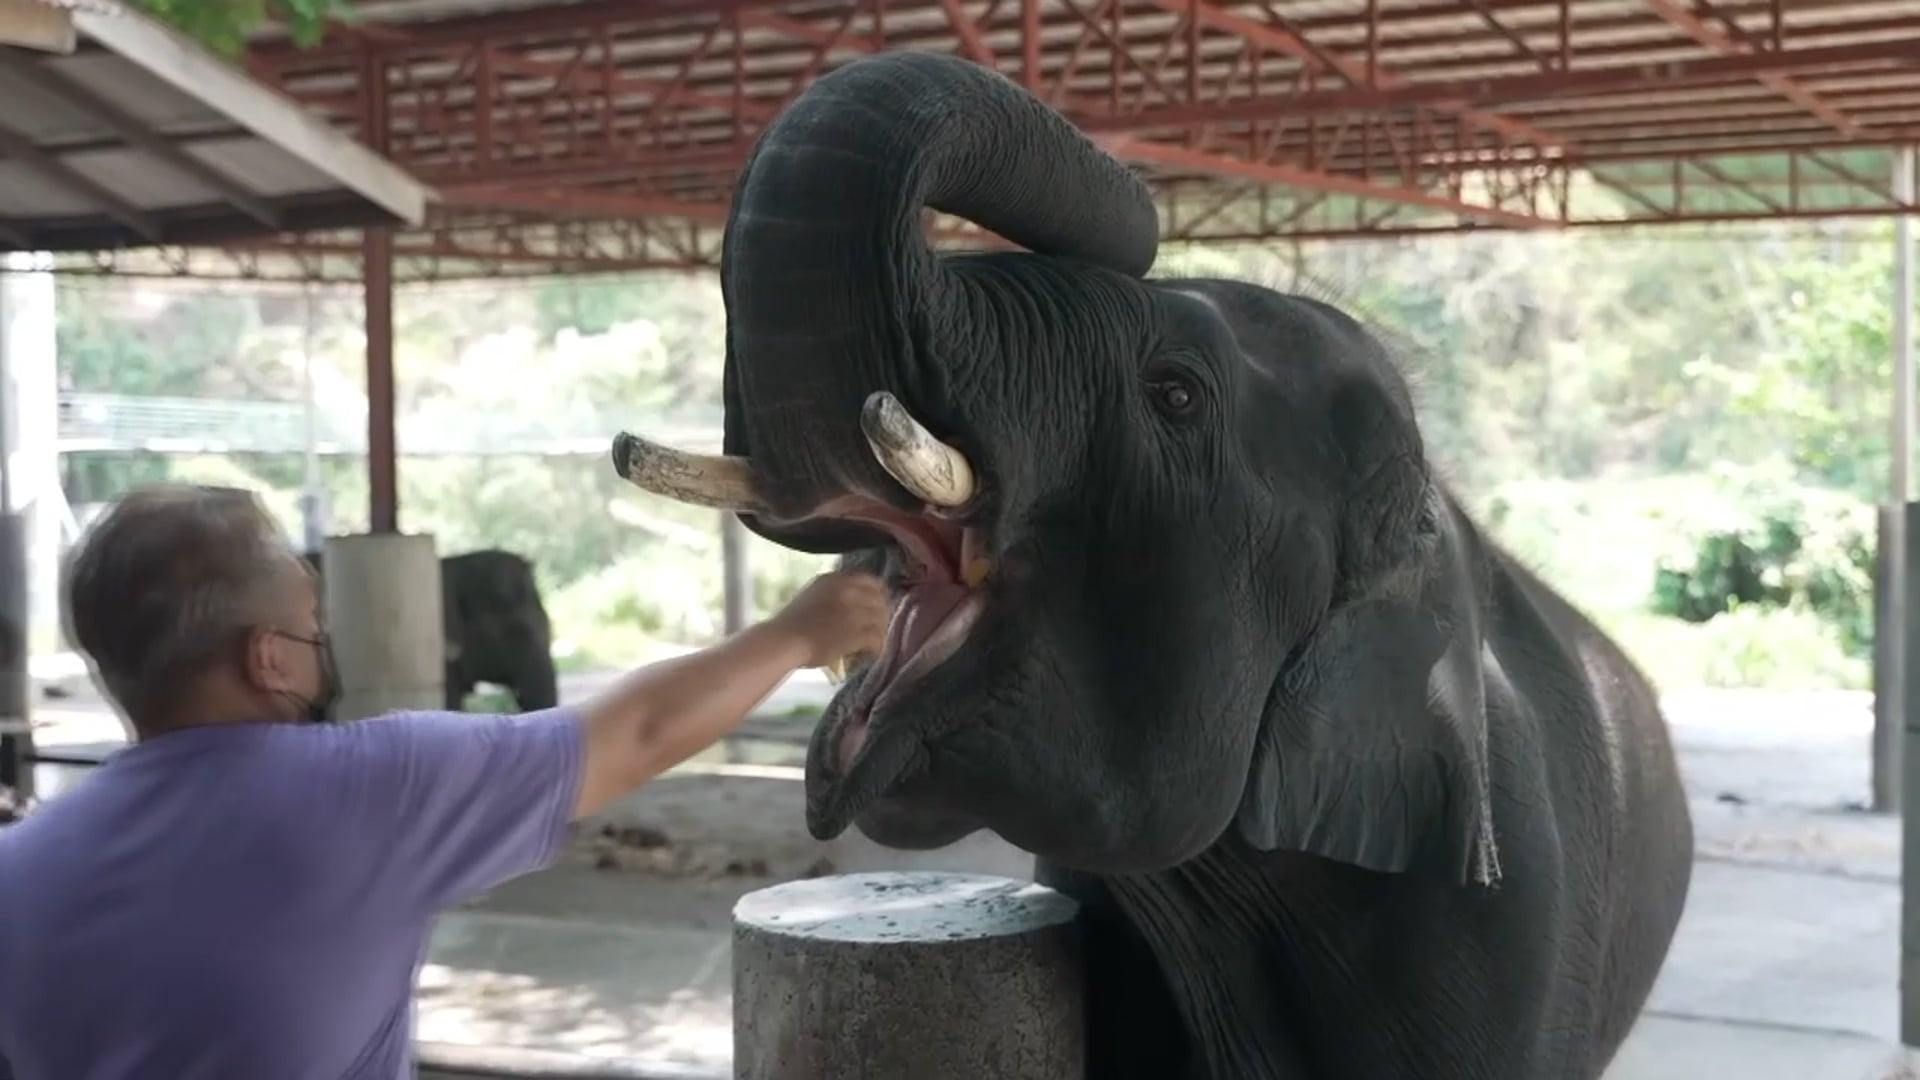 NOS /2021- Elephant tourism recovery